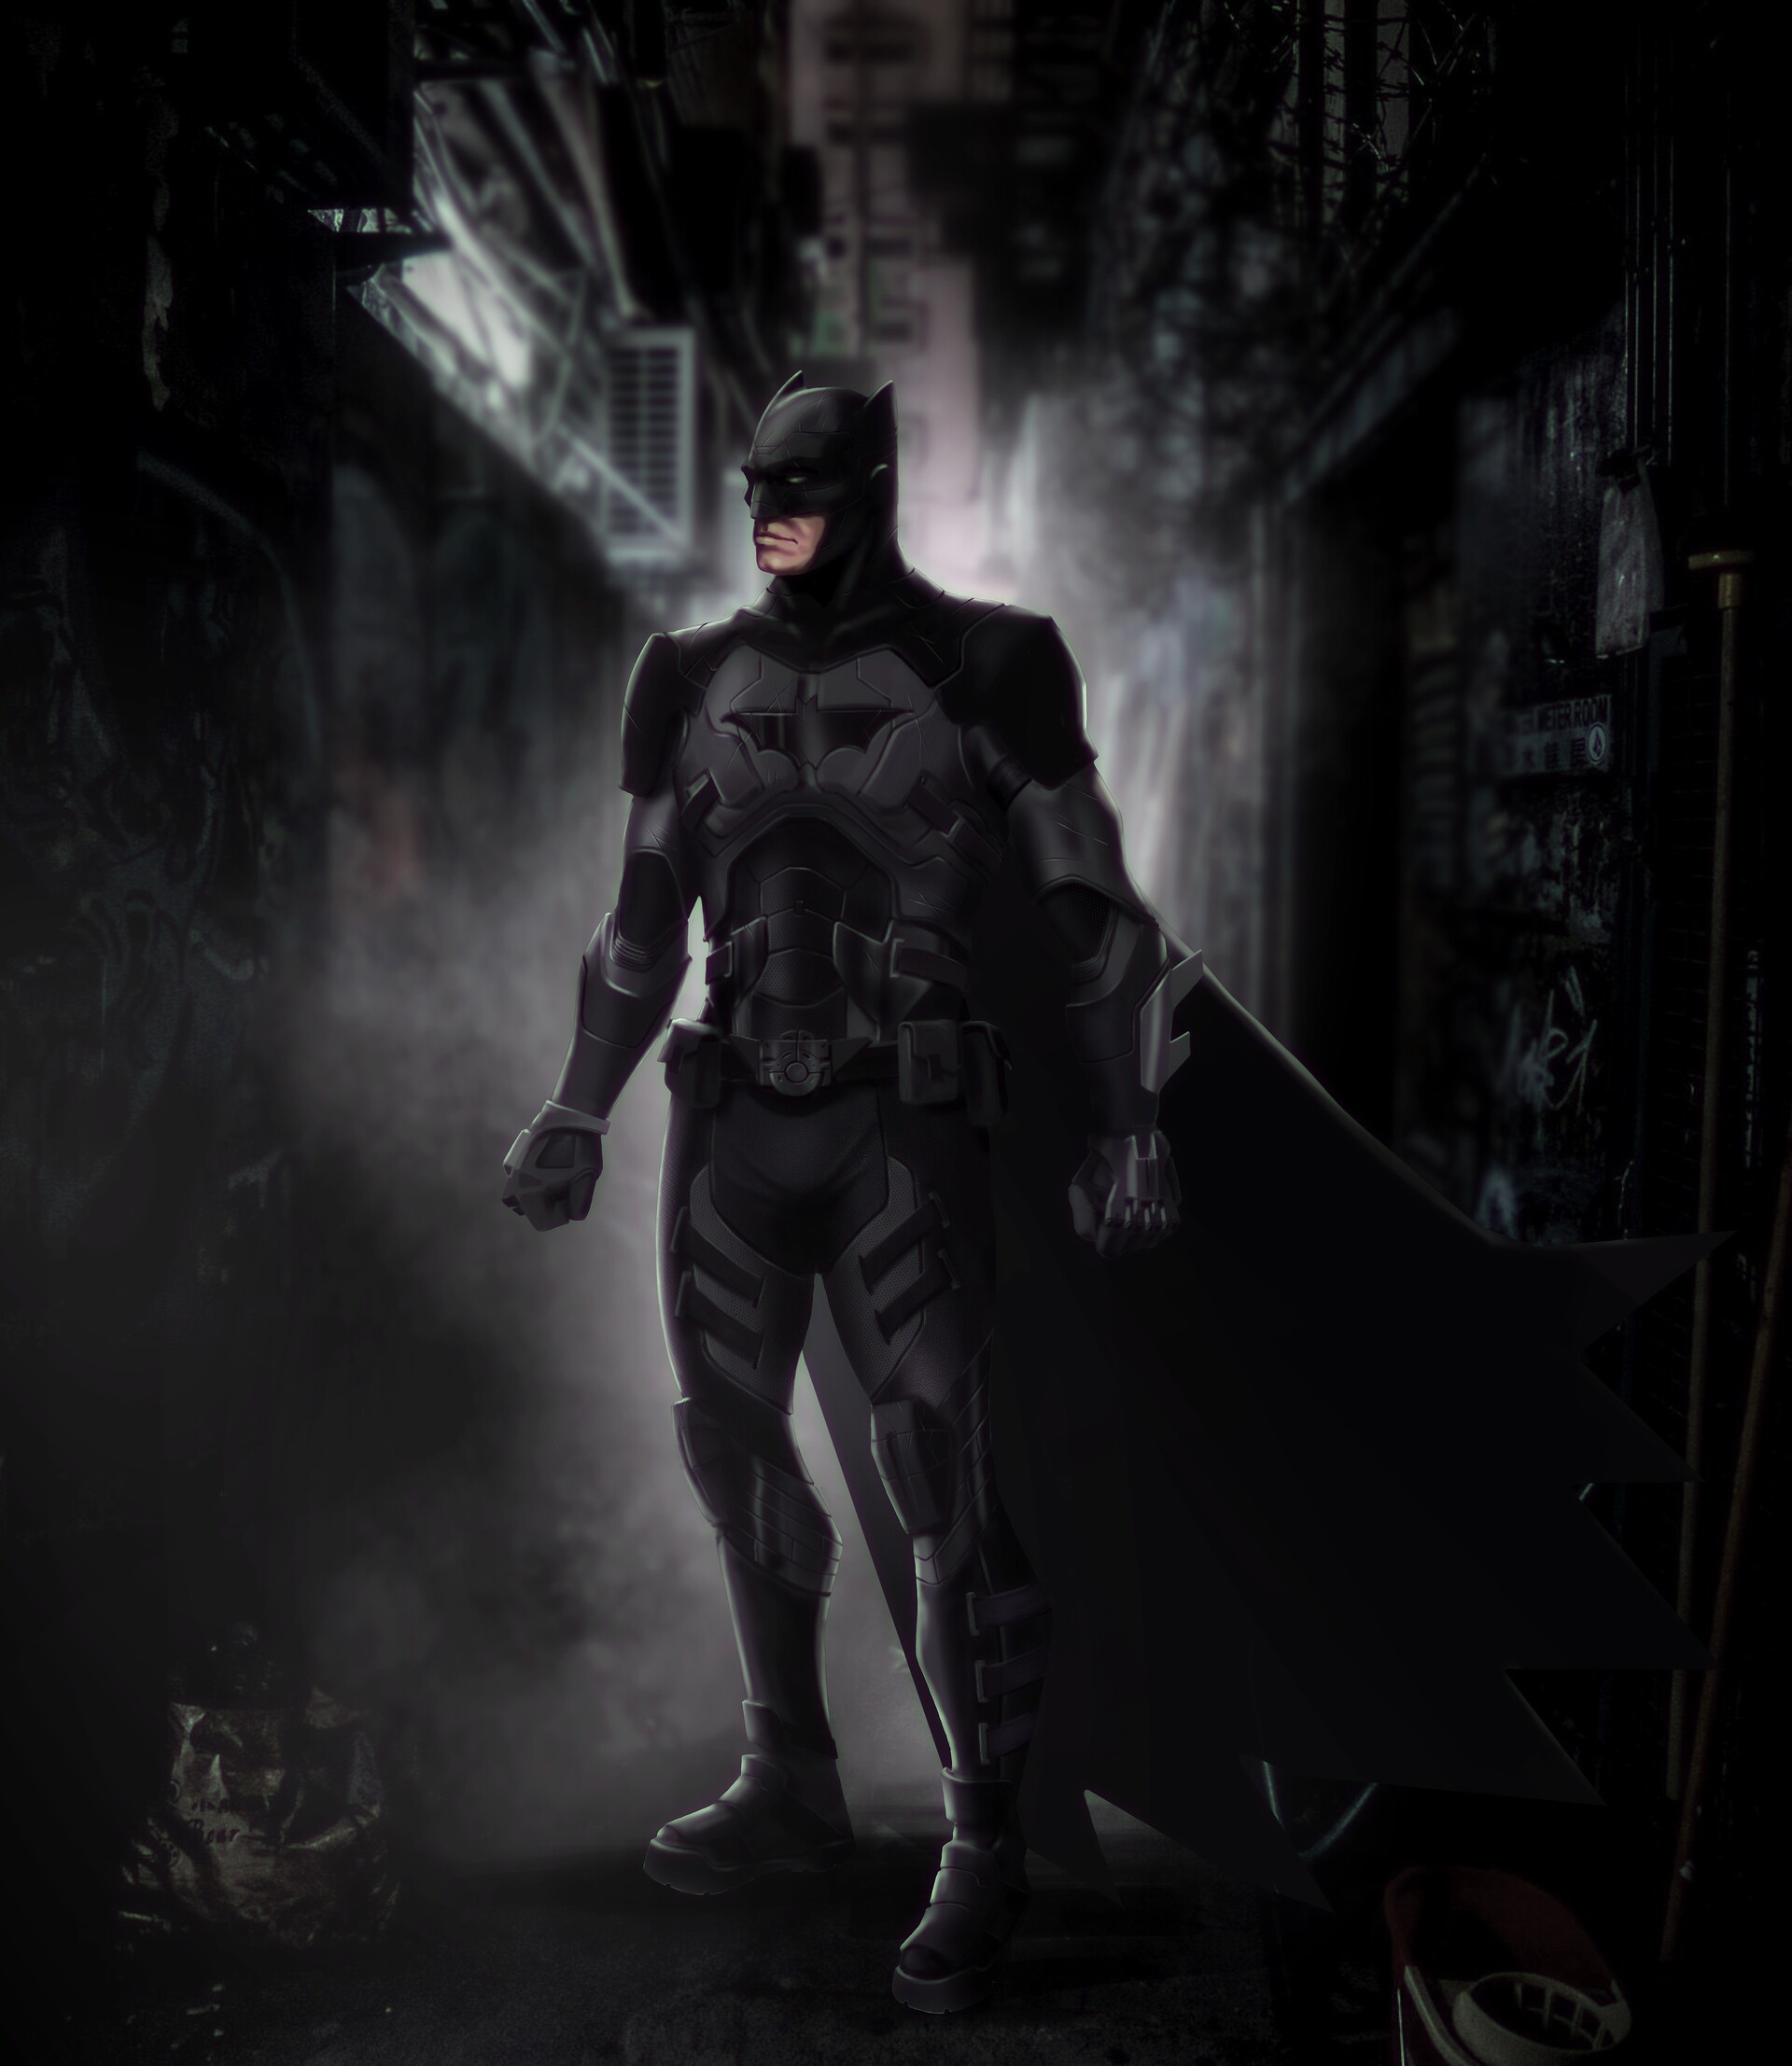 ArtStation - Batman Suit Design